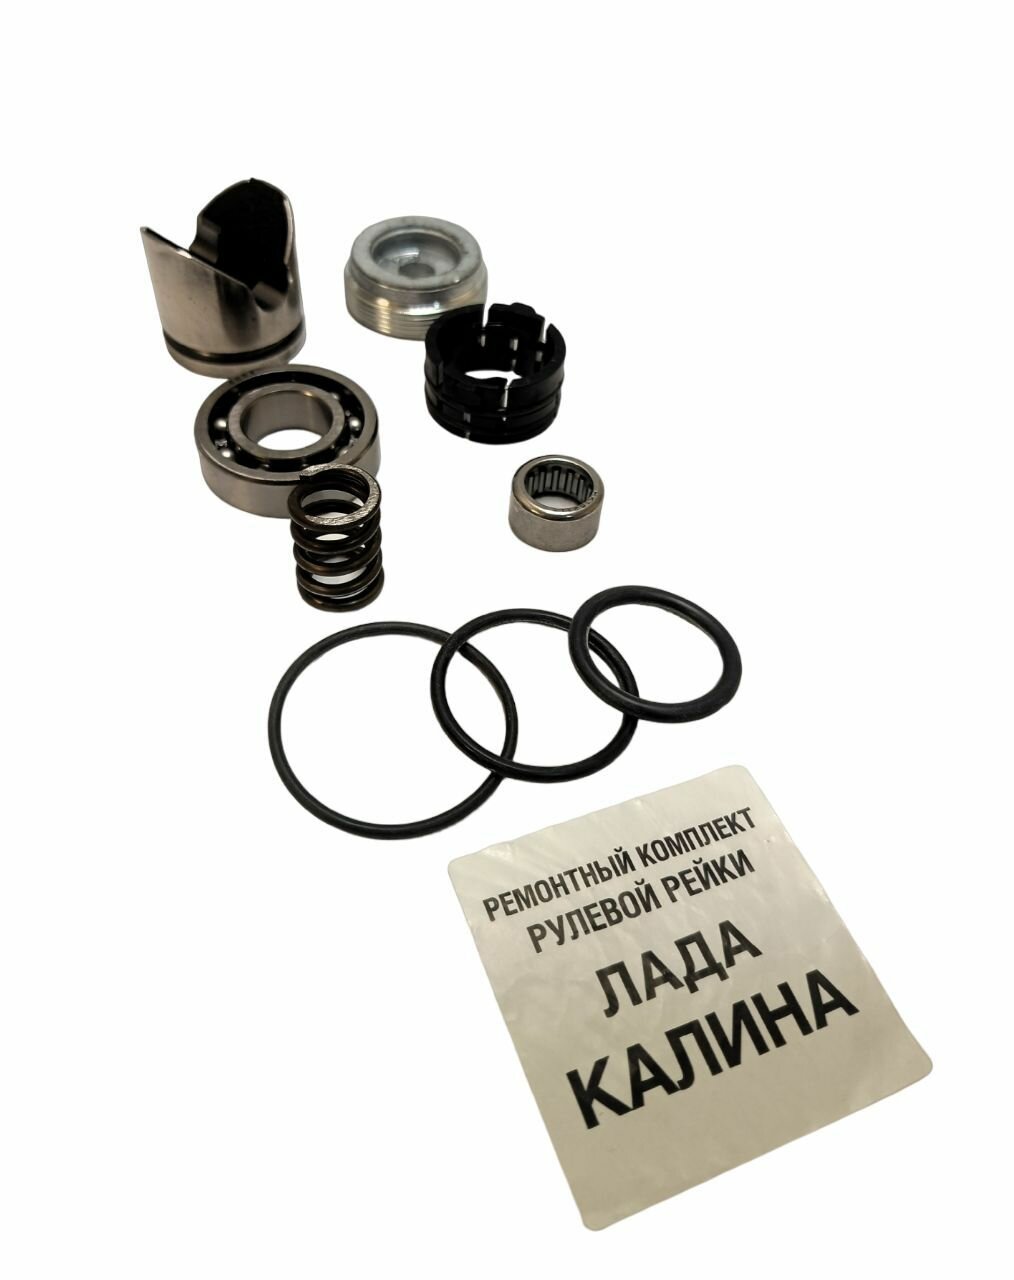 Ремкомплект рулевой рейки ВАЗ Калина Lada Kalina 1117, 1118, 1119 c подшипником